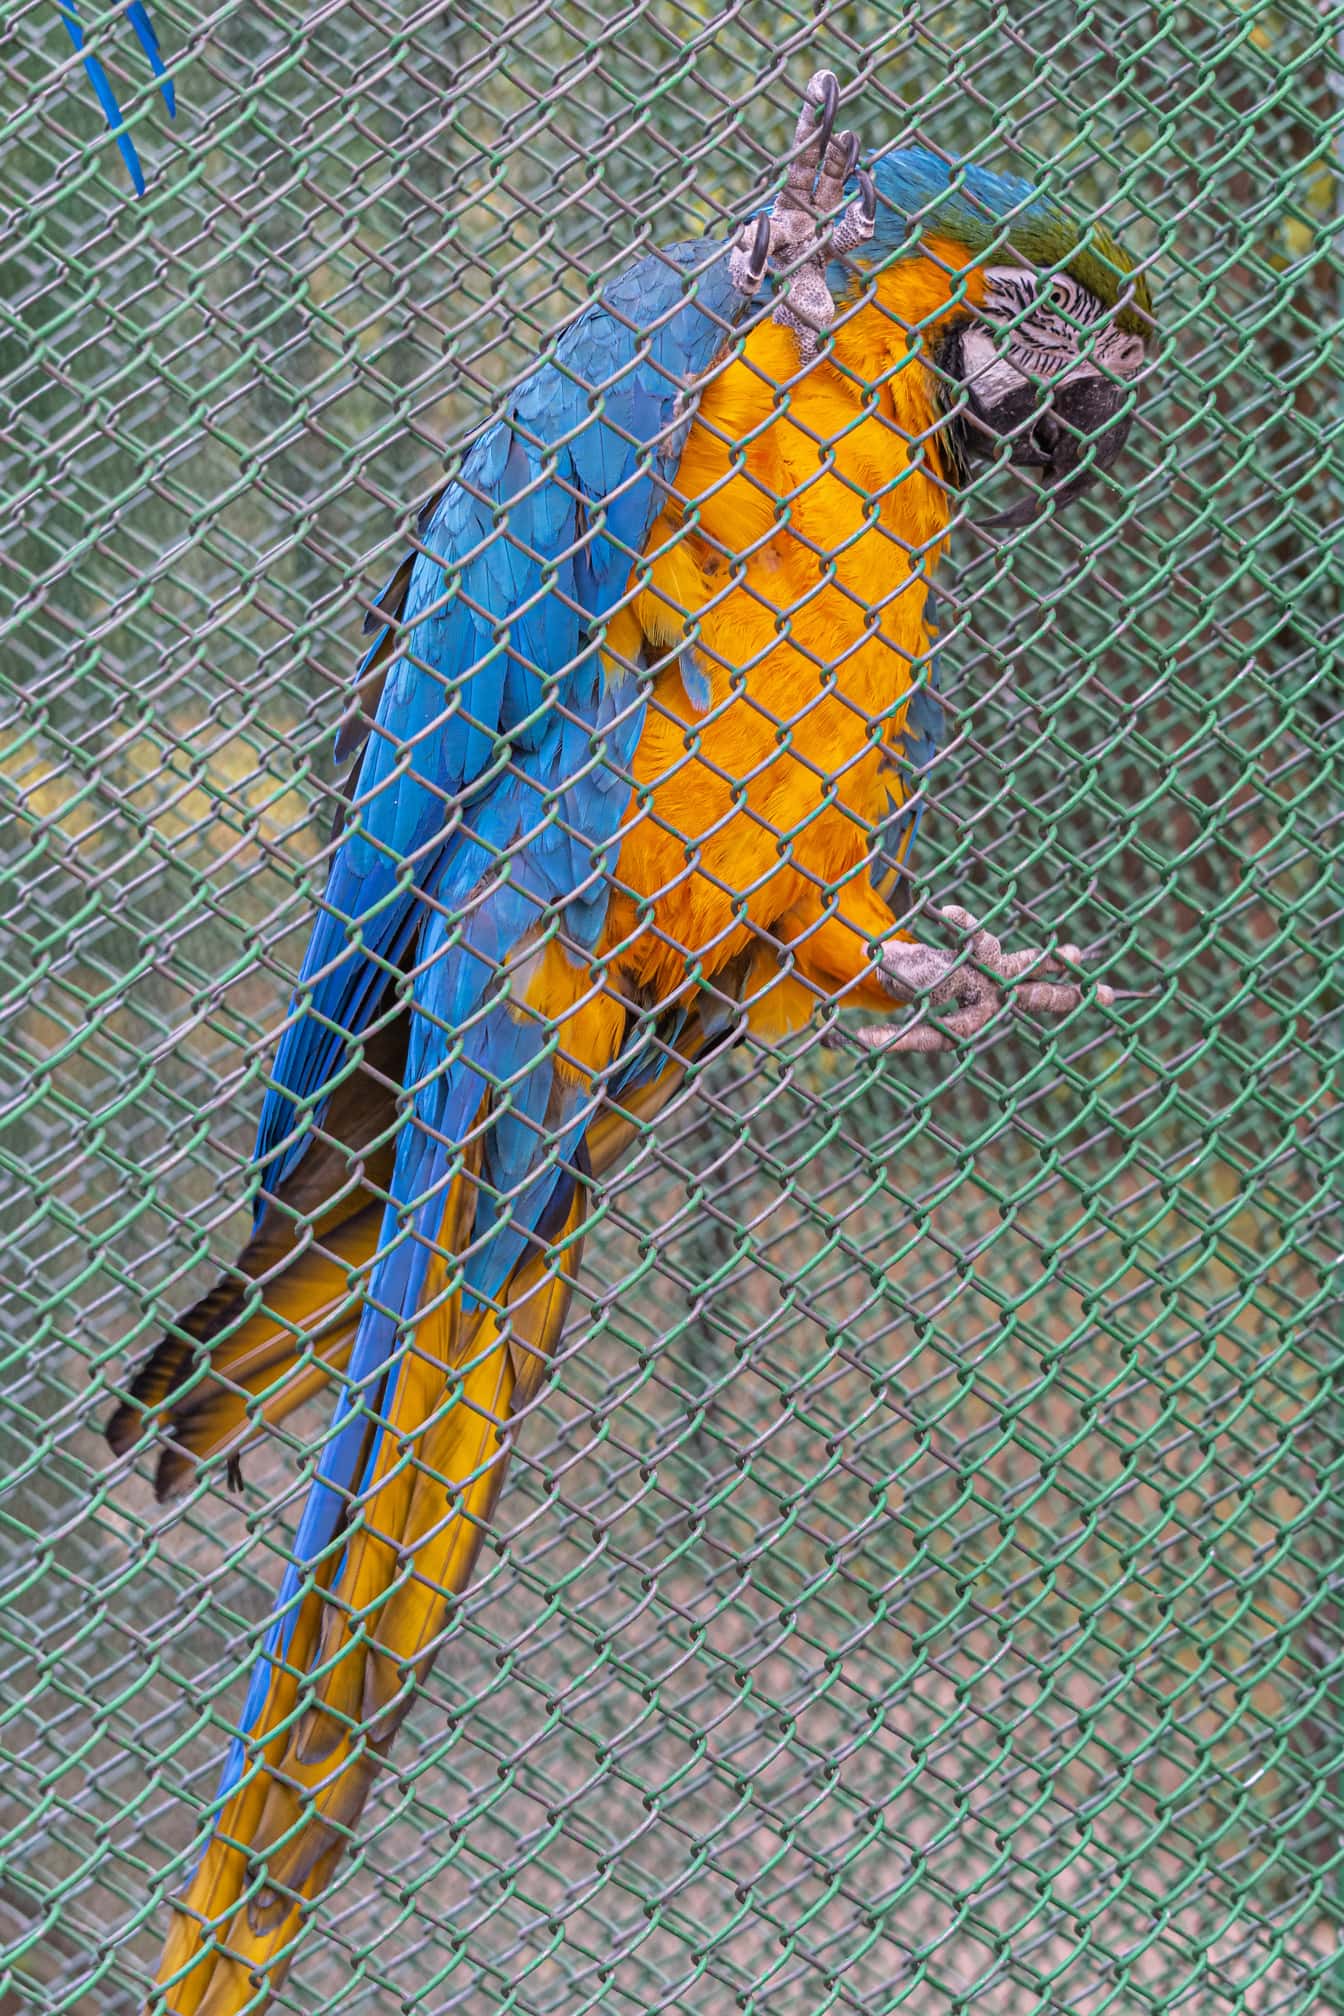 蓝色和橙黄色金刚鹦鹉 (Ara ararauna) 笼子围栏上的鹦鹉鸟